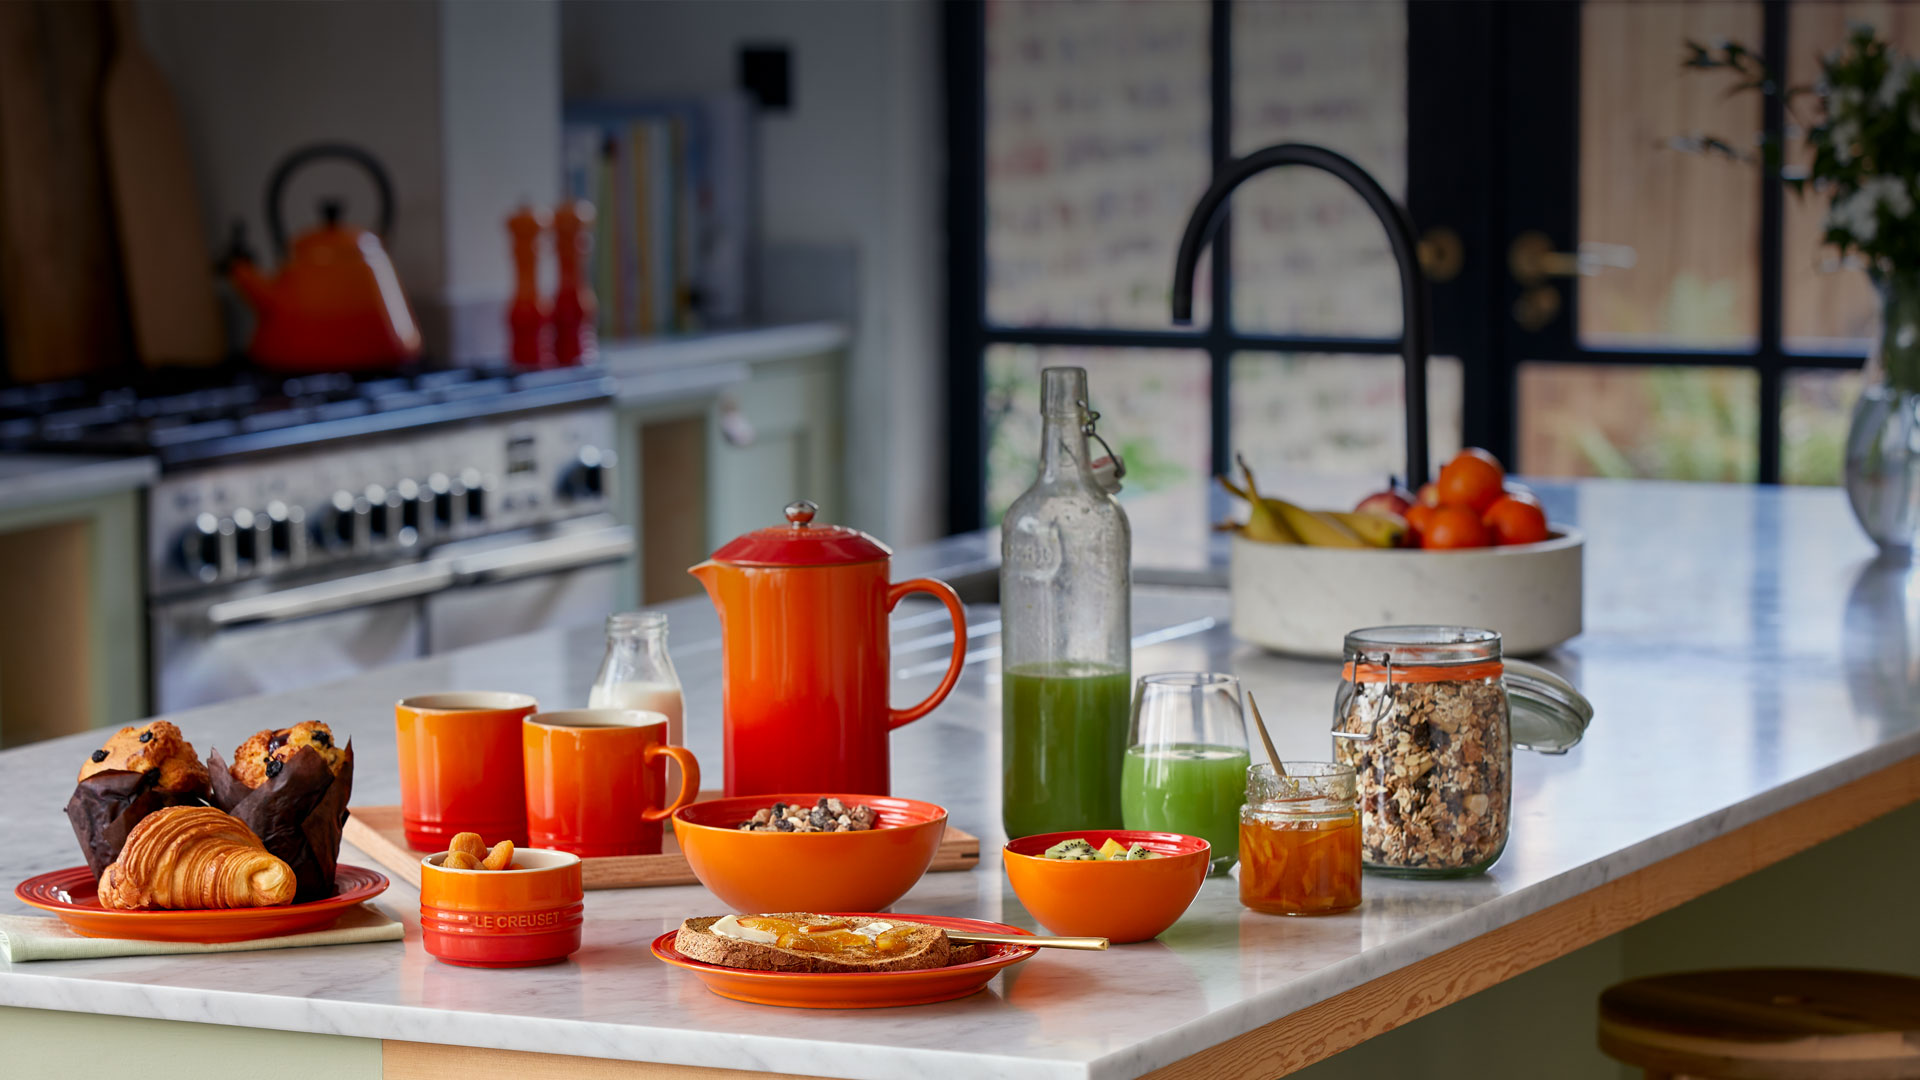 Le Creuset Orange Cookware Sets